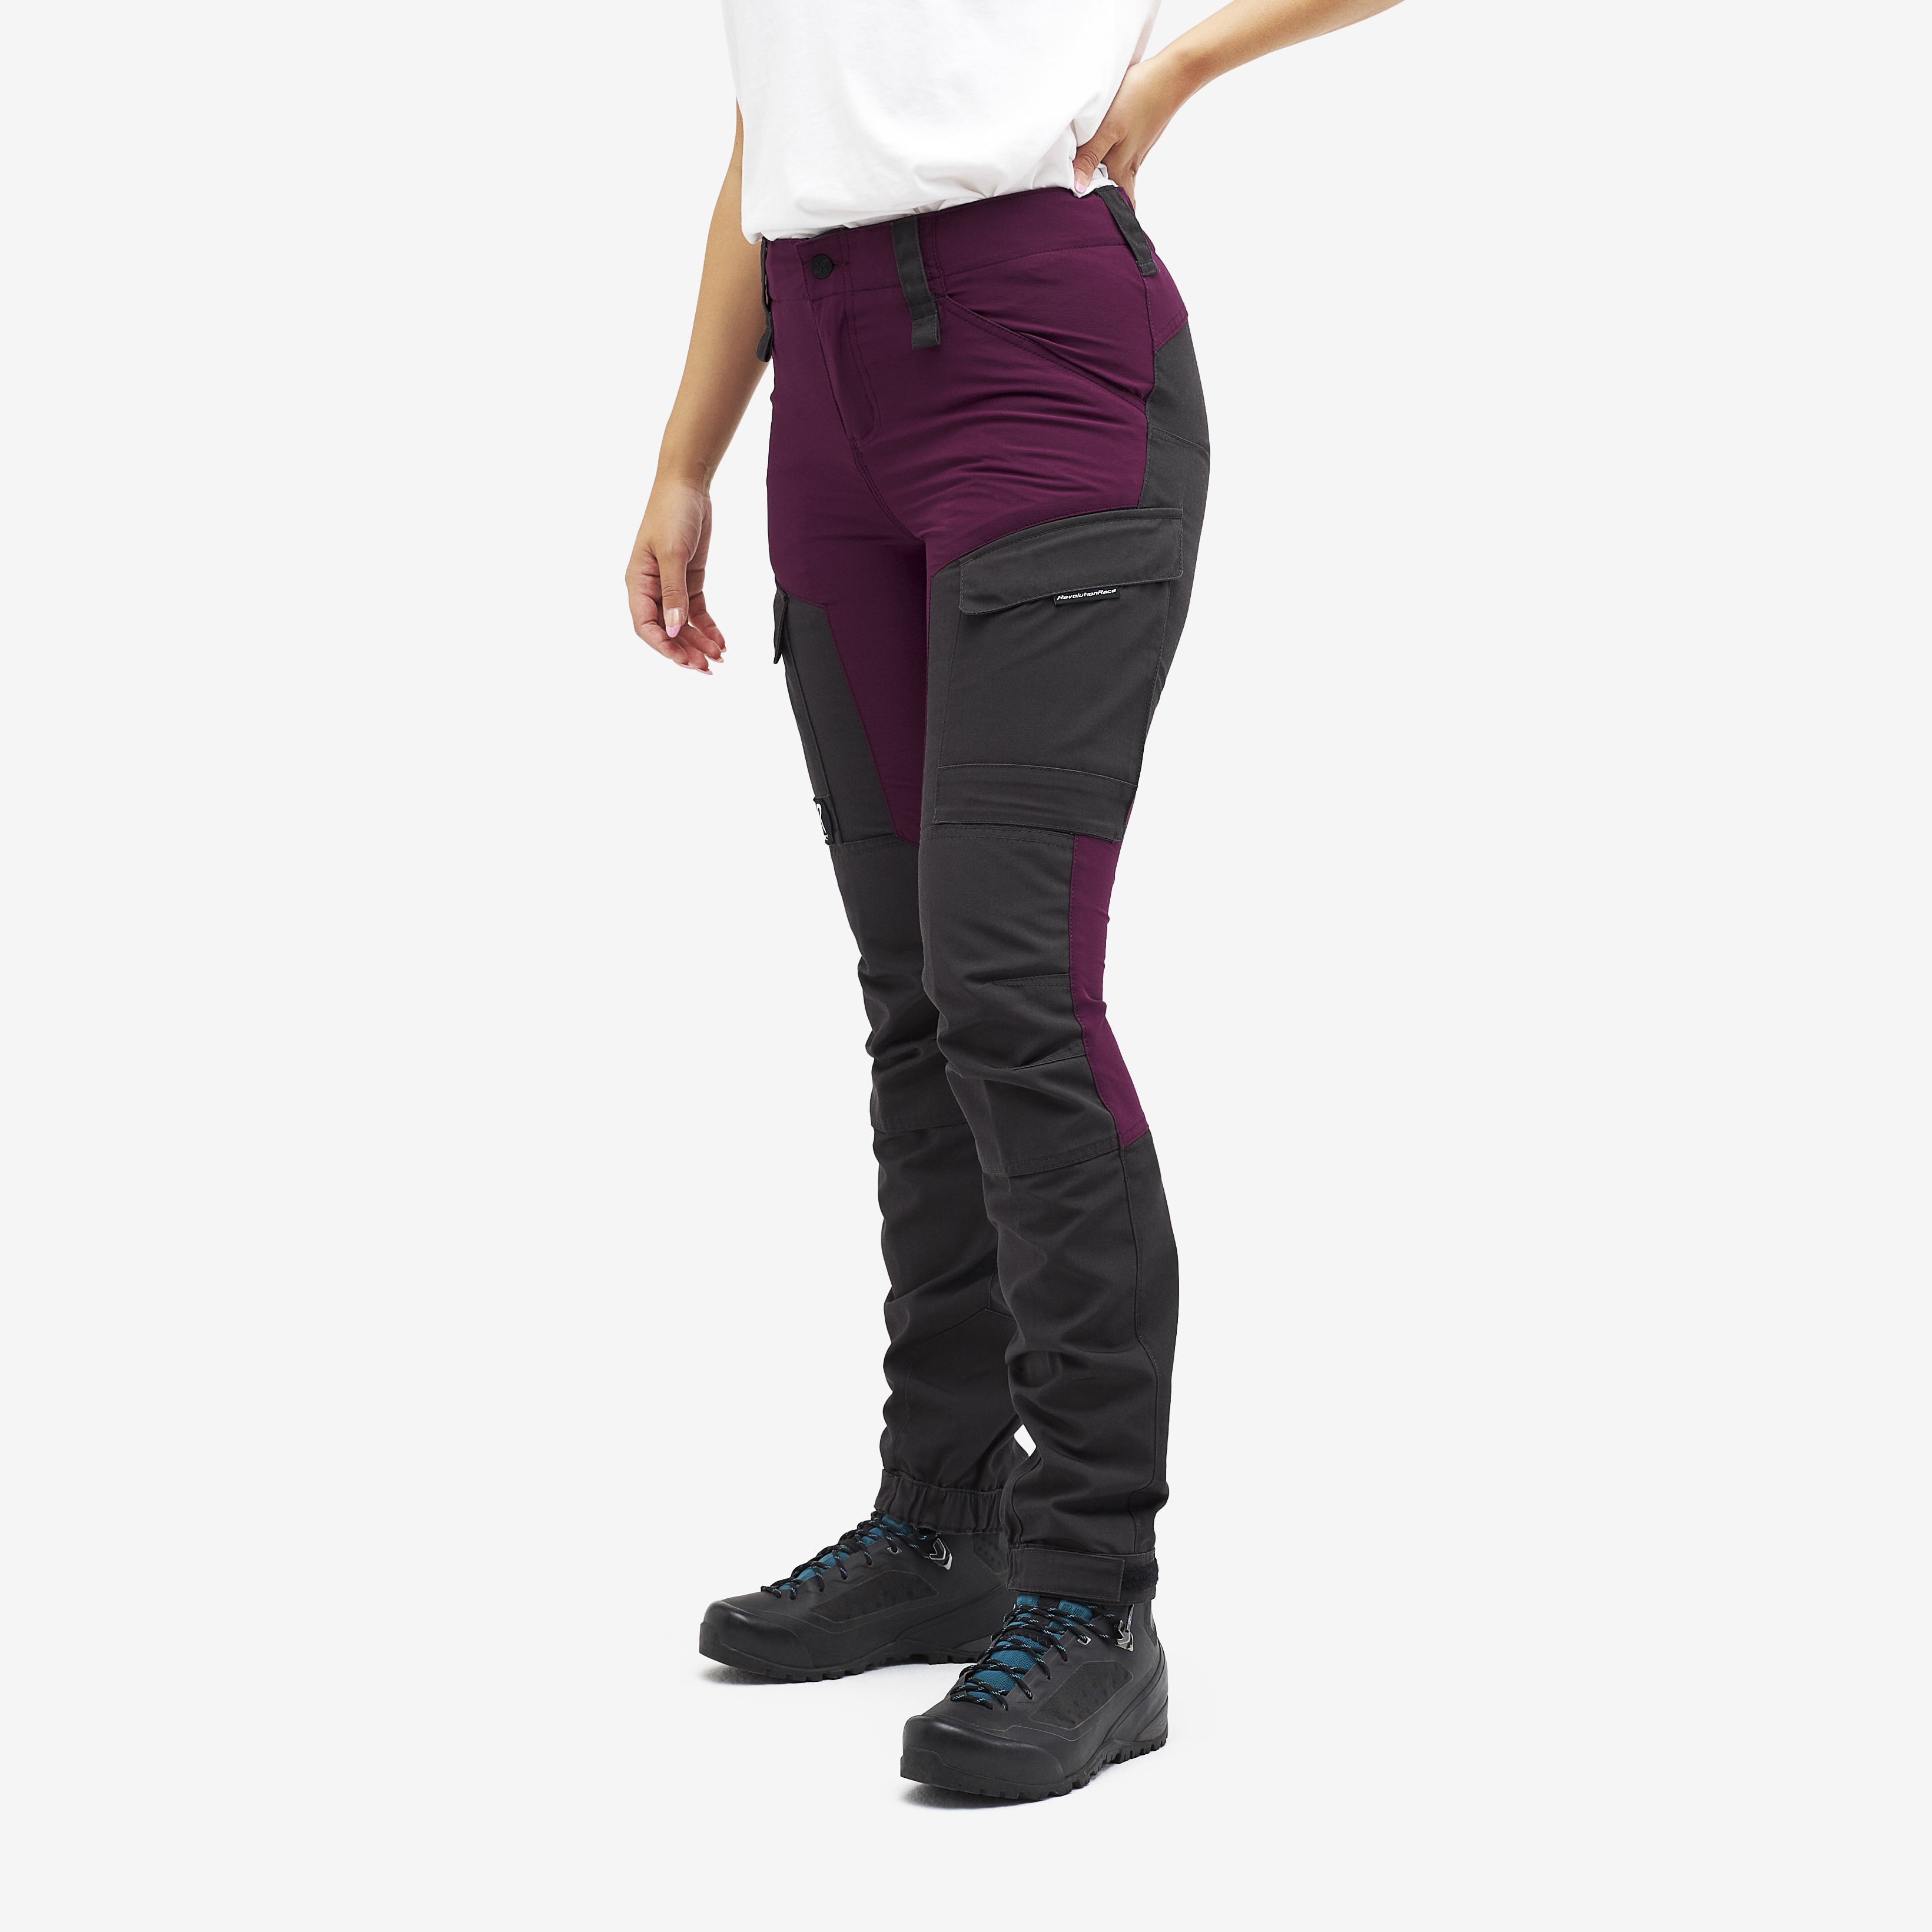 RVRC GP outdoor pants for women in purple